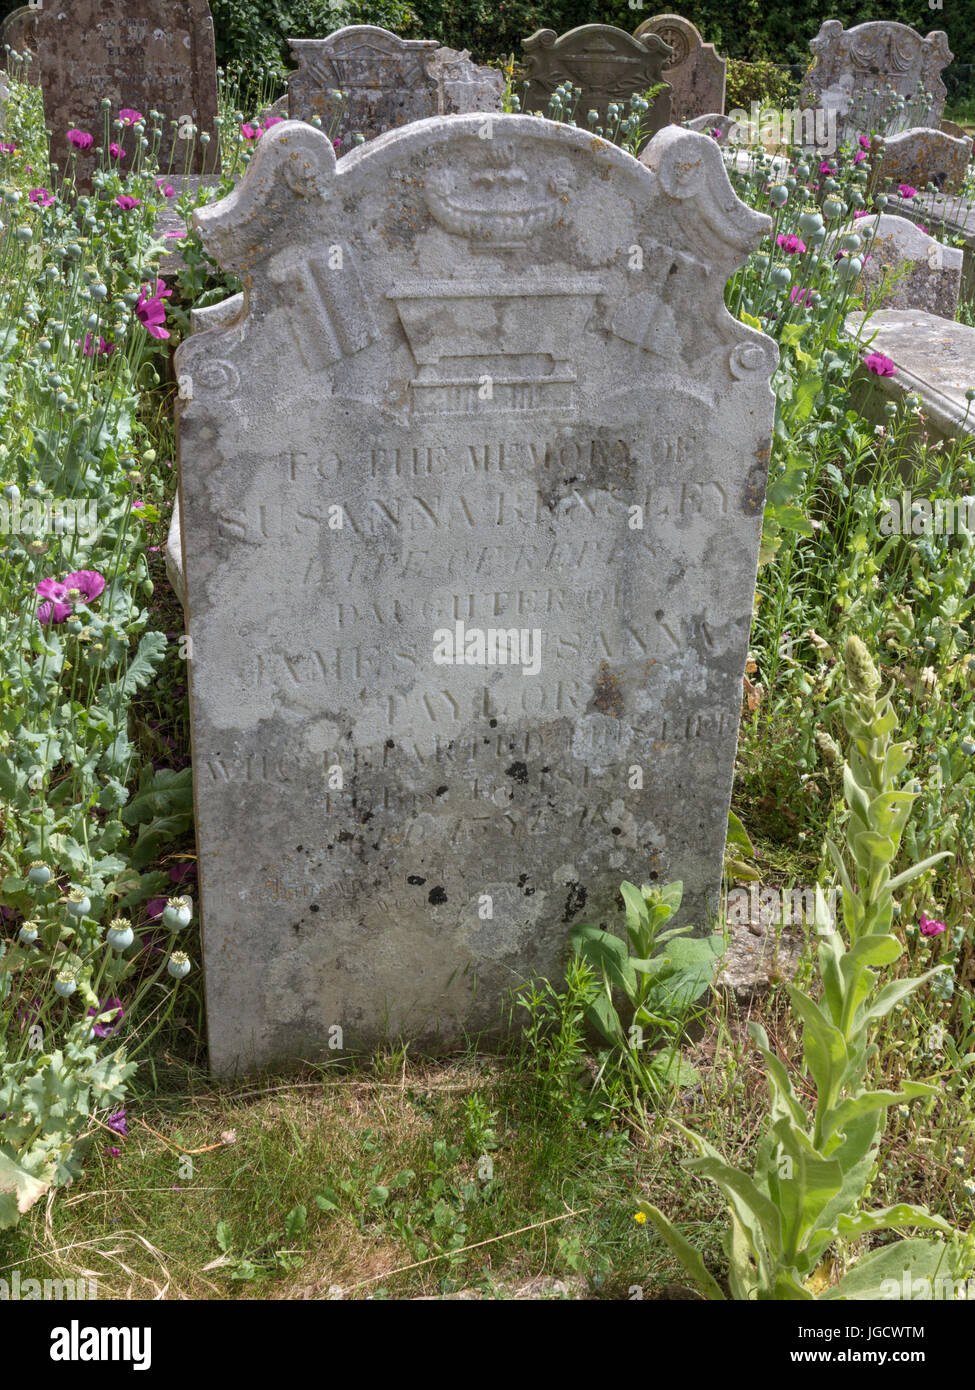 Lápidas en una sección de vida silvestre de un cementerio con flores silvestres y pastos Foto de stock